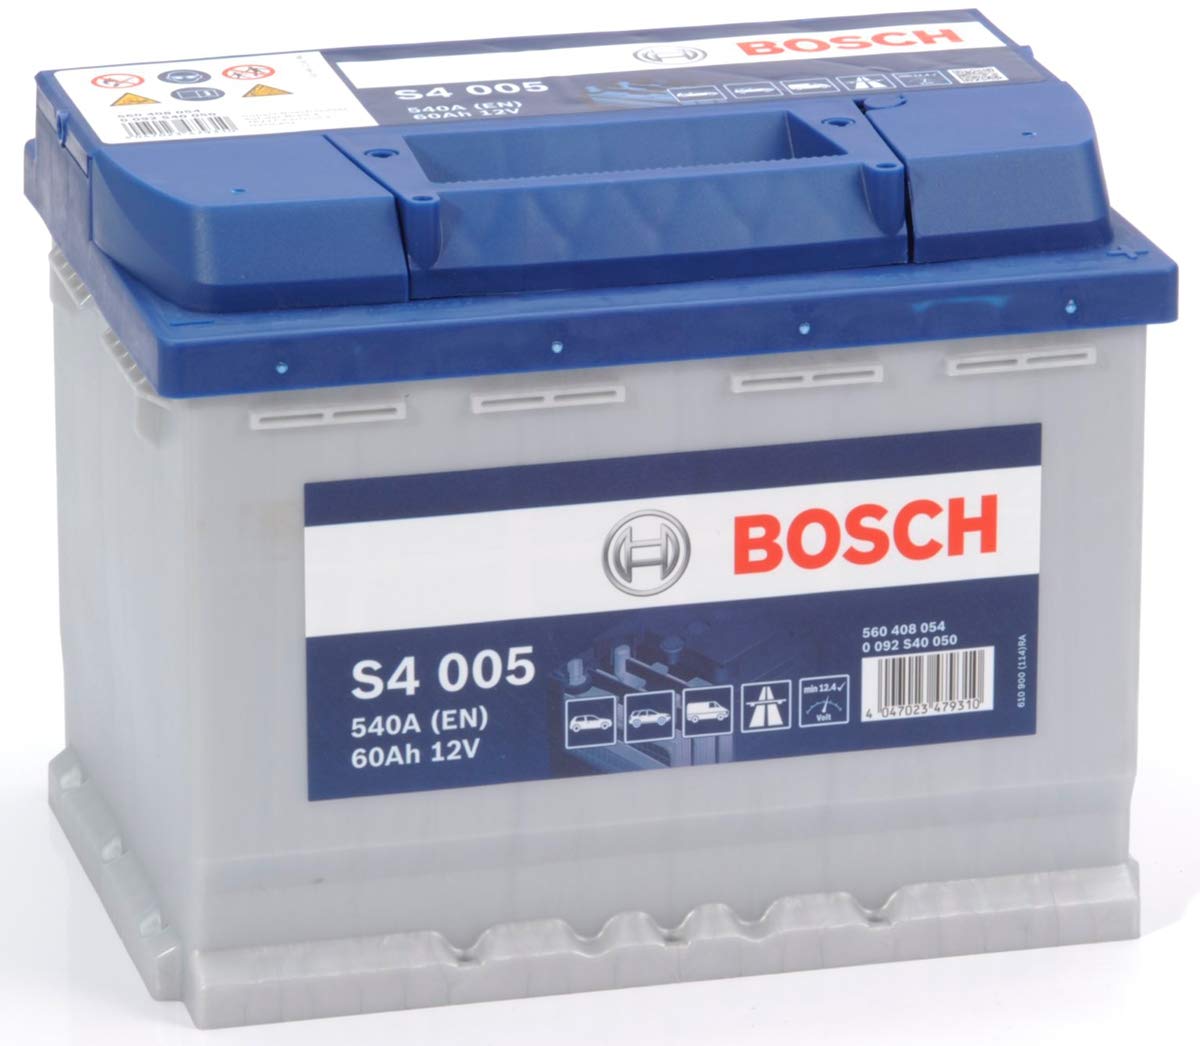 SMC, Bosch Silver Autobatterie S4 005, 60 Ah, 540 A, 12 V. Professionell, betriebsbereit von SMC